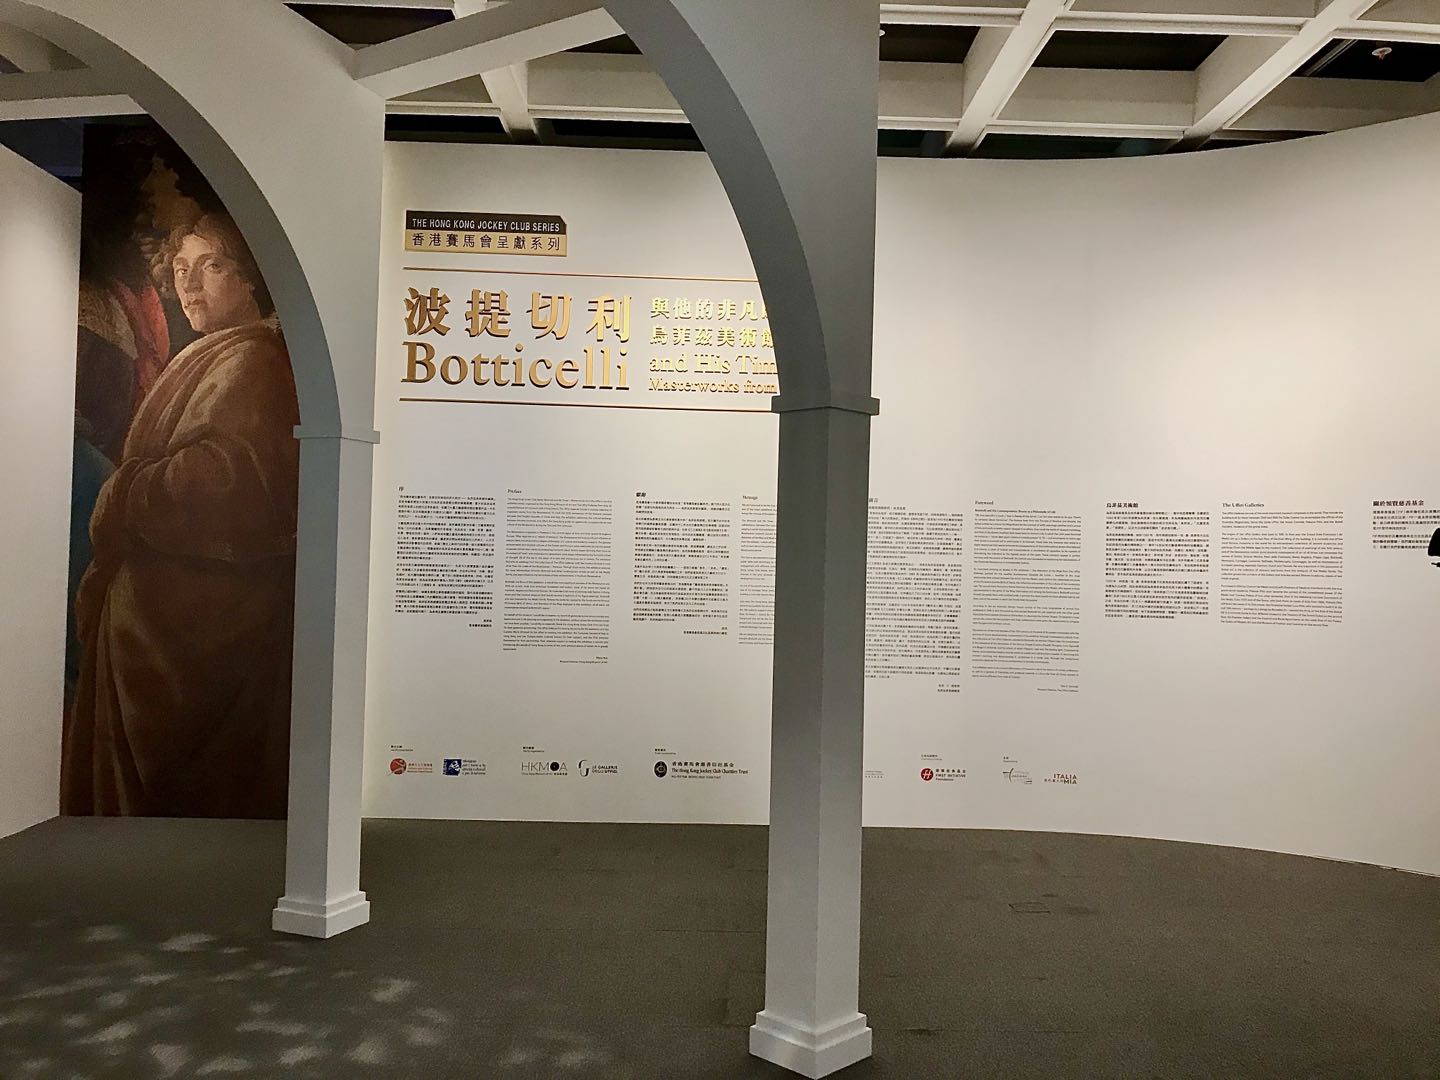 本次展覽是桑德羅·波提切利作品在港最集中的一次展示(大公報記者黃璇攝)